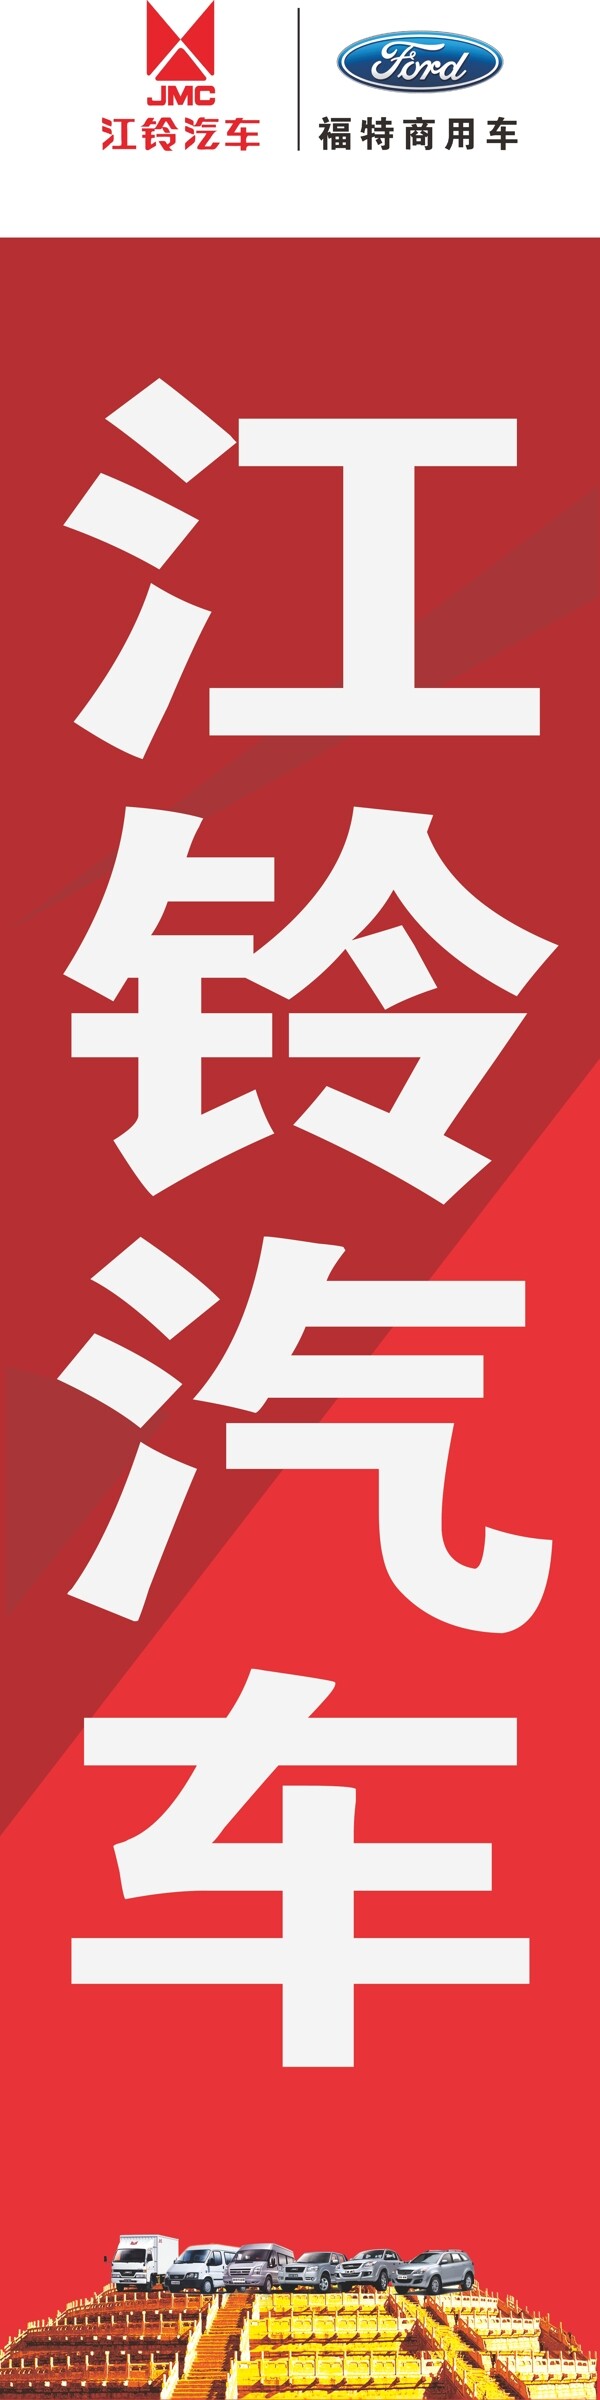 江铃汽车道旗图片